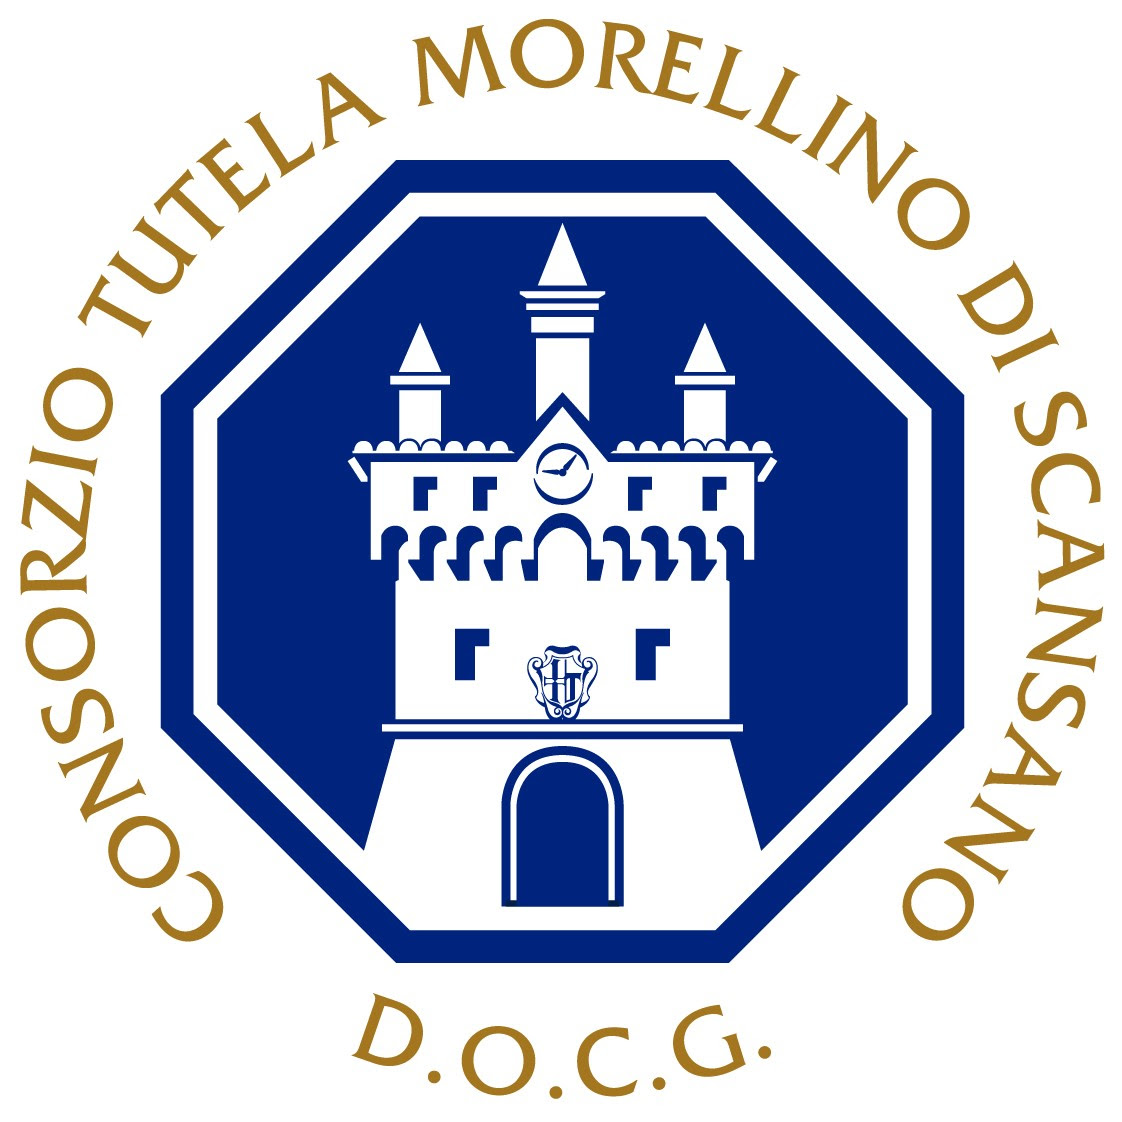 Il Morellino di Scansano protagonista a Firenze Rocks 2022, logo del Consorzio Tutela Morellino di Scansano, logo da comunicato stampa